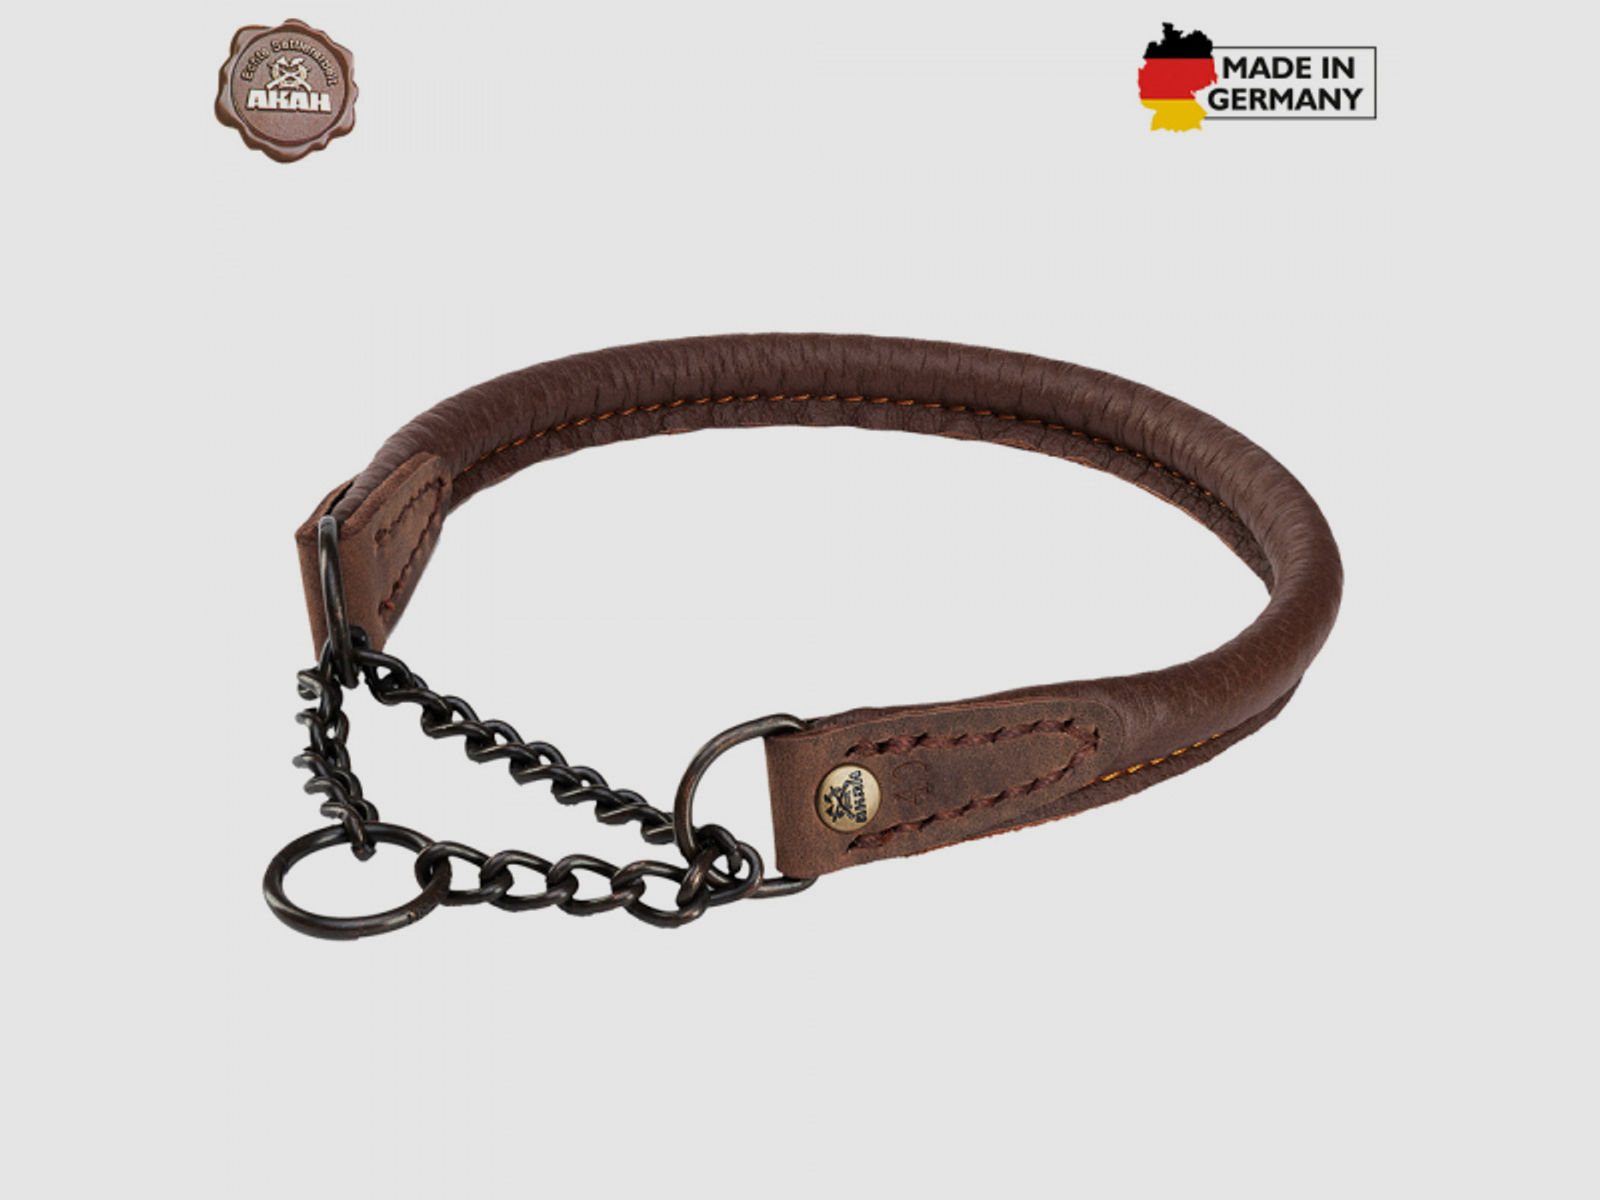 HALSUNG aus ELCHLEDER - rundgenäht, mit Durchzugskette Handgenäht in GERMANY Halsumfang Größe: 35cm